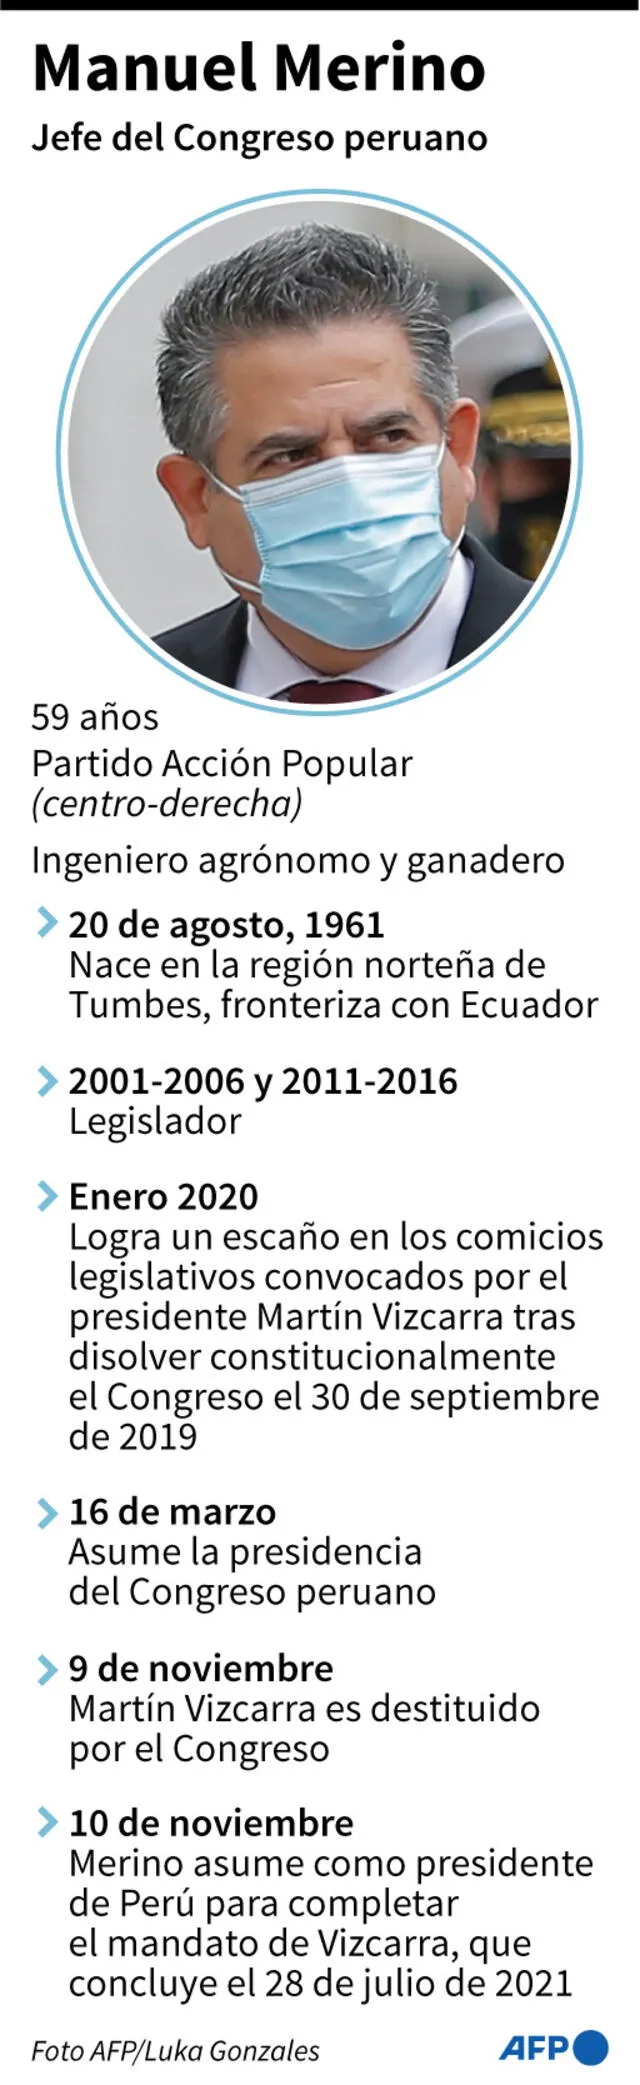 Ficha de Manuel Merino, jefe del Congreso que asumió este martes como nuevo presidente del Perú. Infografía: AFP